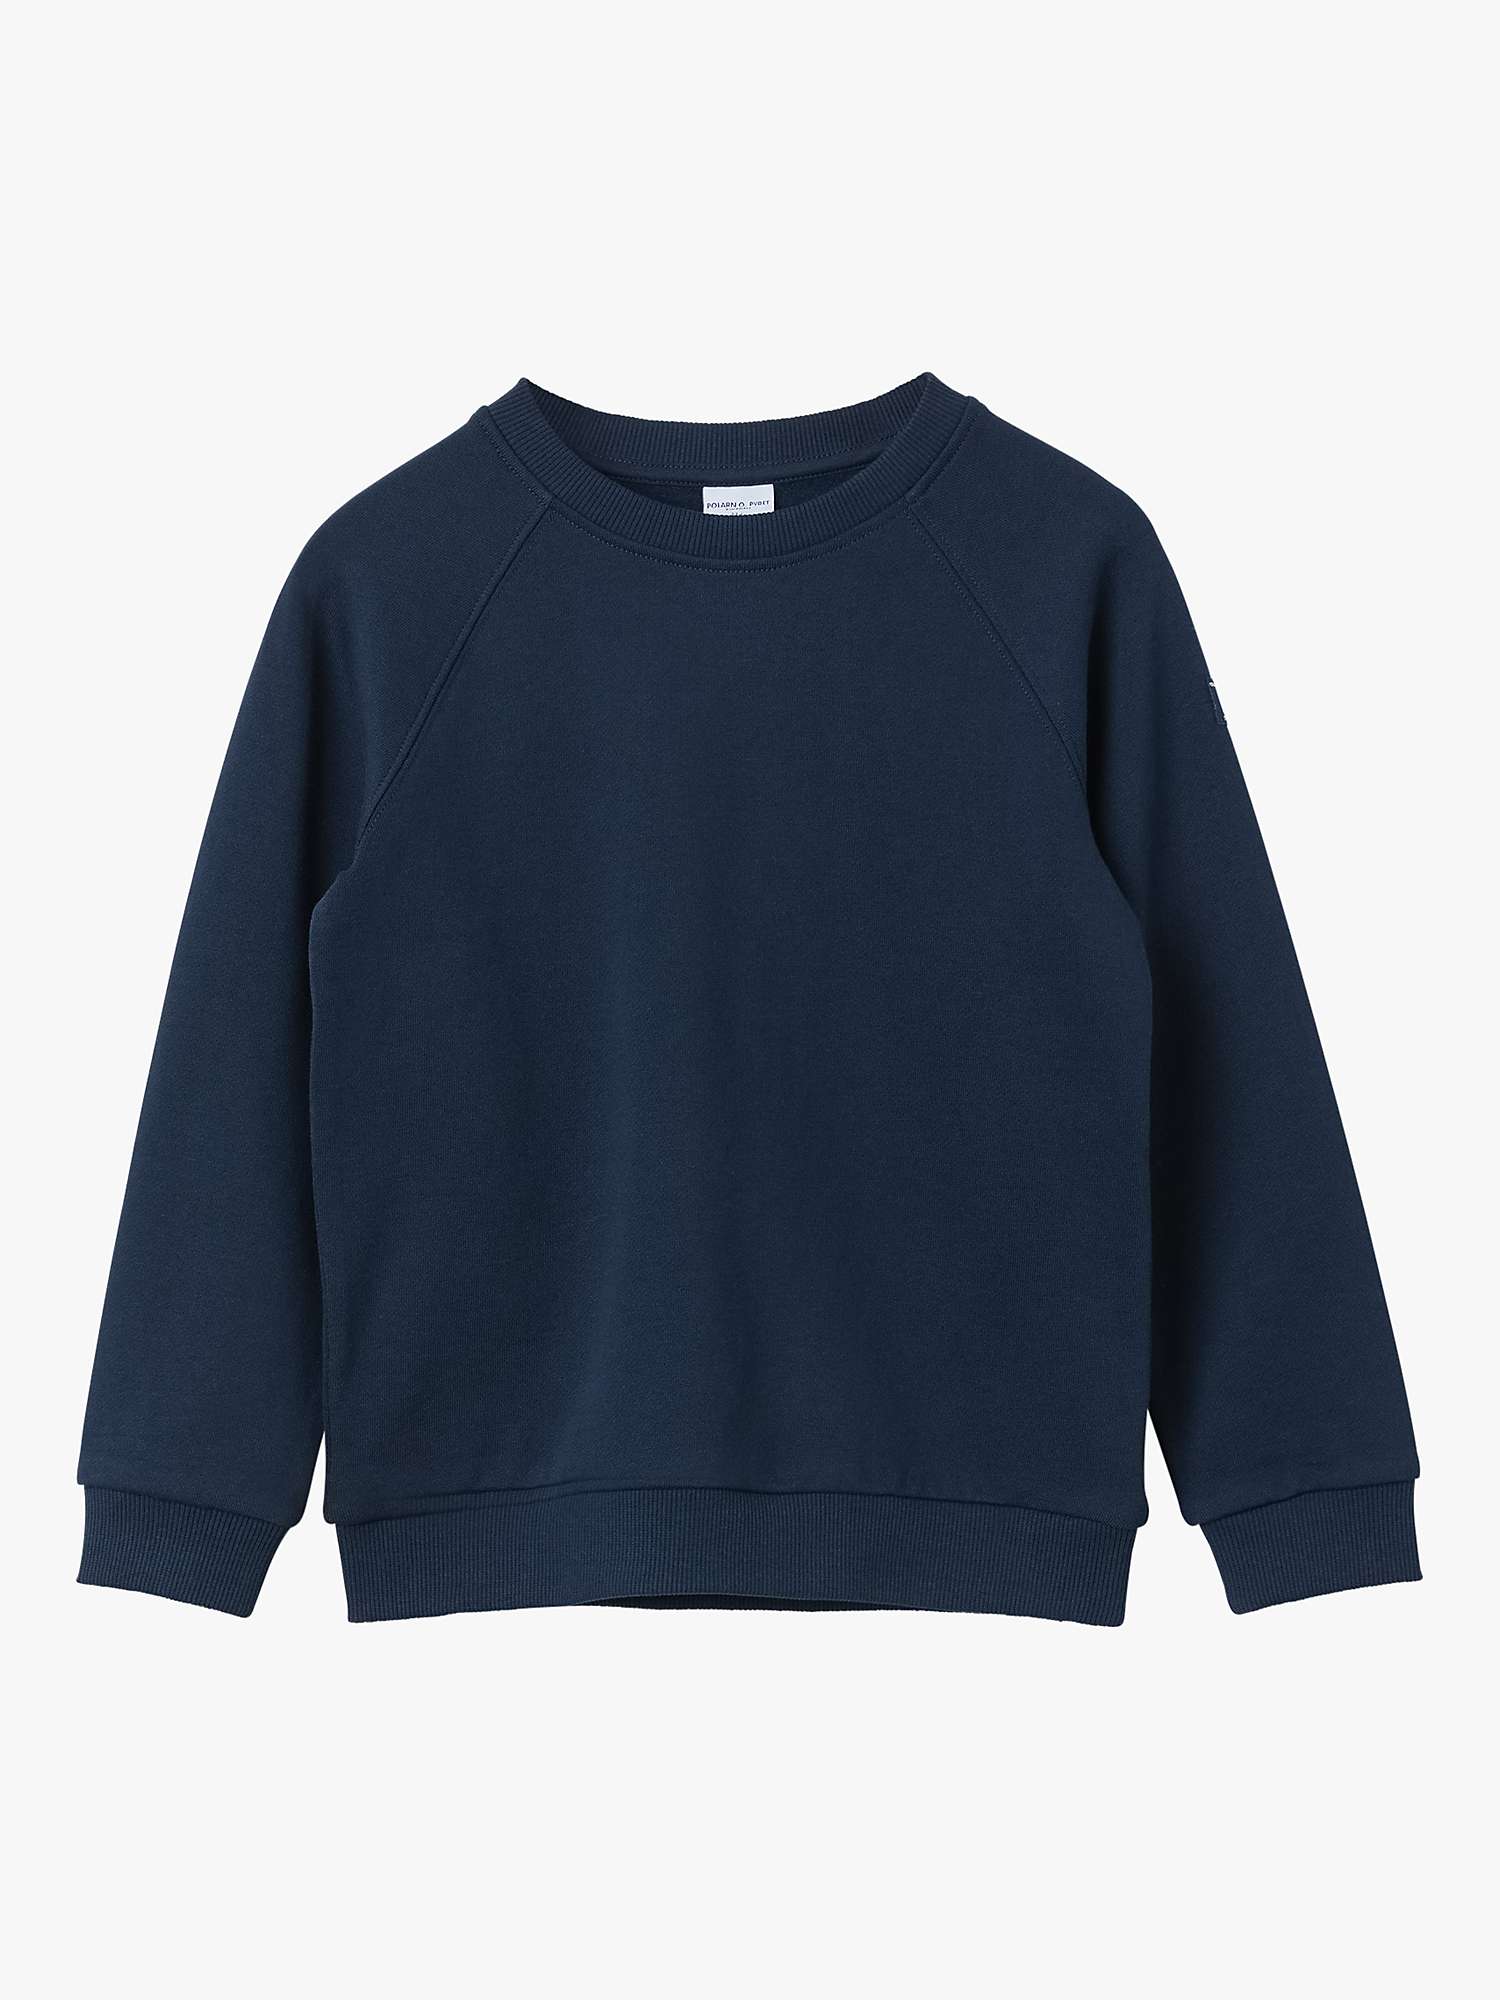 Buy Polarn O. Pyret Kids' Organic Cotton Sweatshirt Online at johnlewis.com